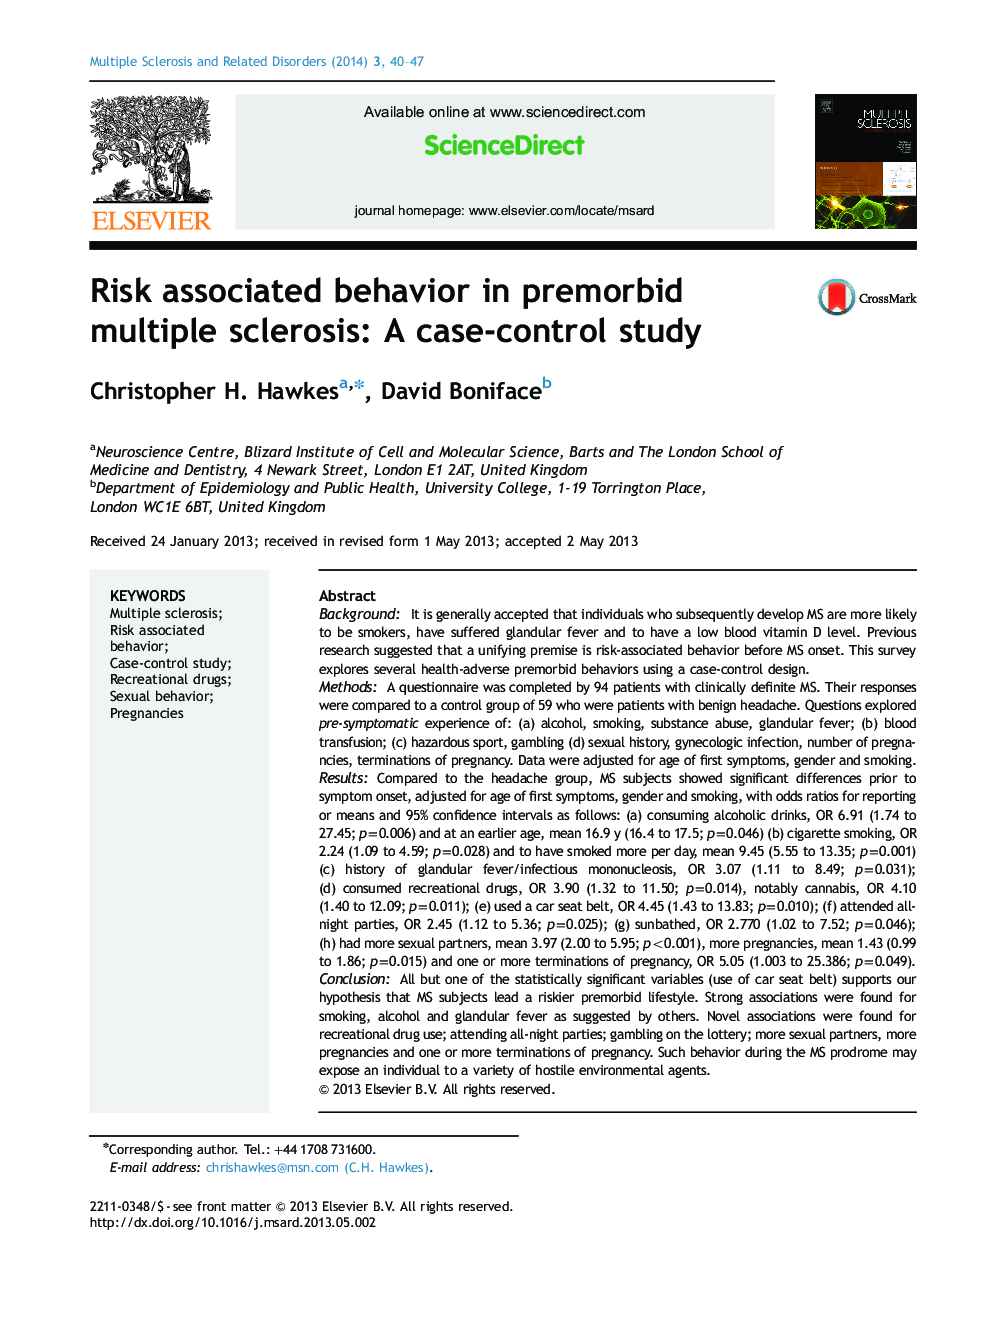 رفتار مرتبط با ریسک در مولتیپل اسکلروز مولتیپل اسکلروزیس: یک مطالعه مورد-شاهدی 